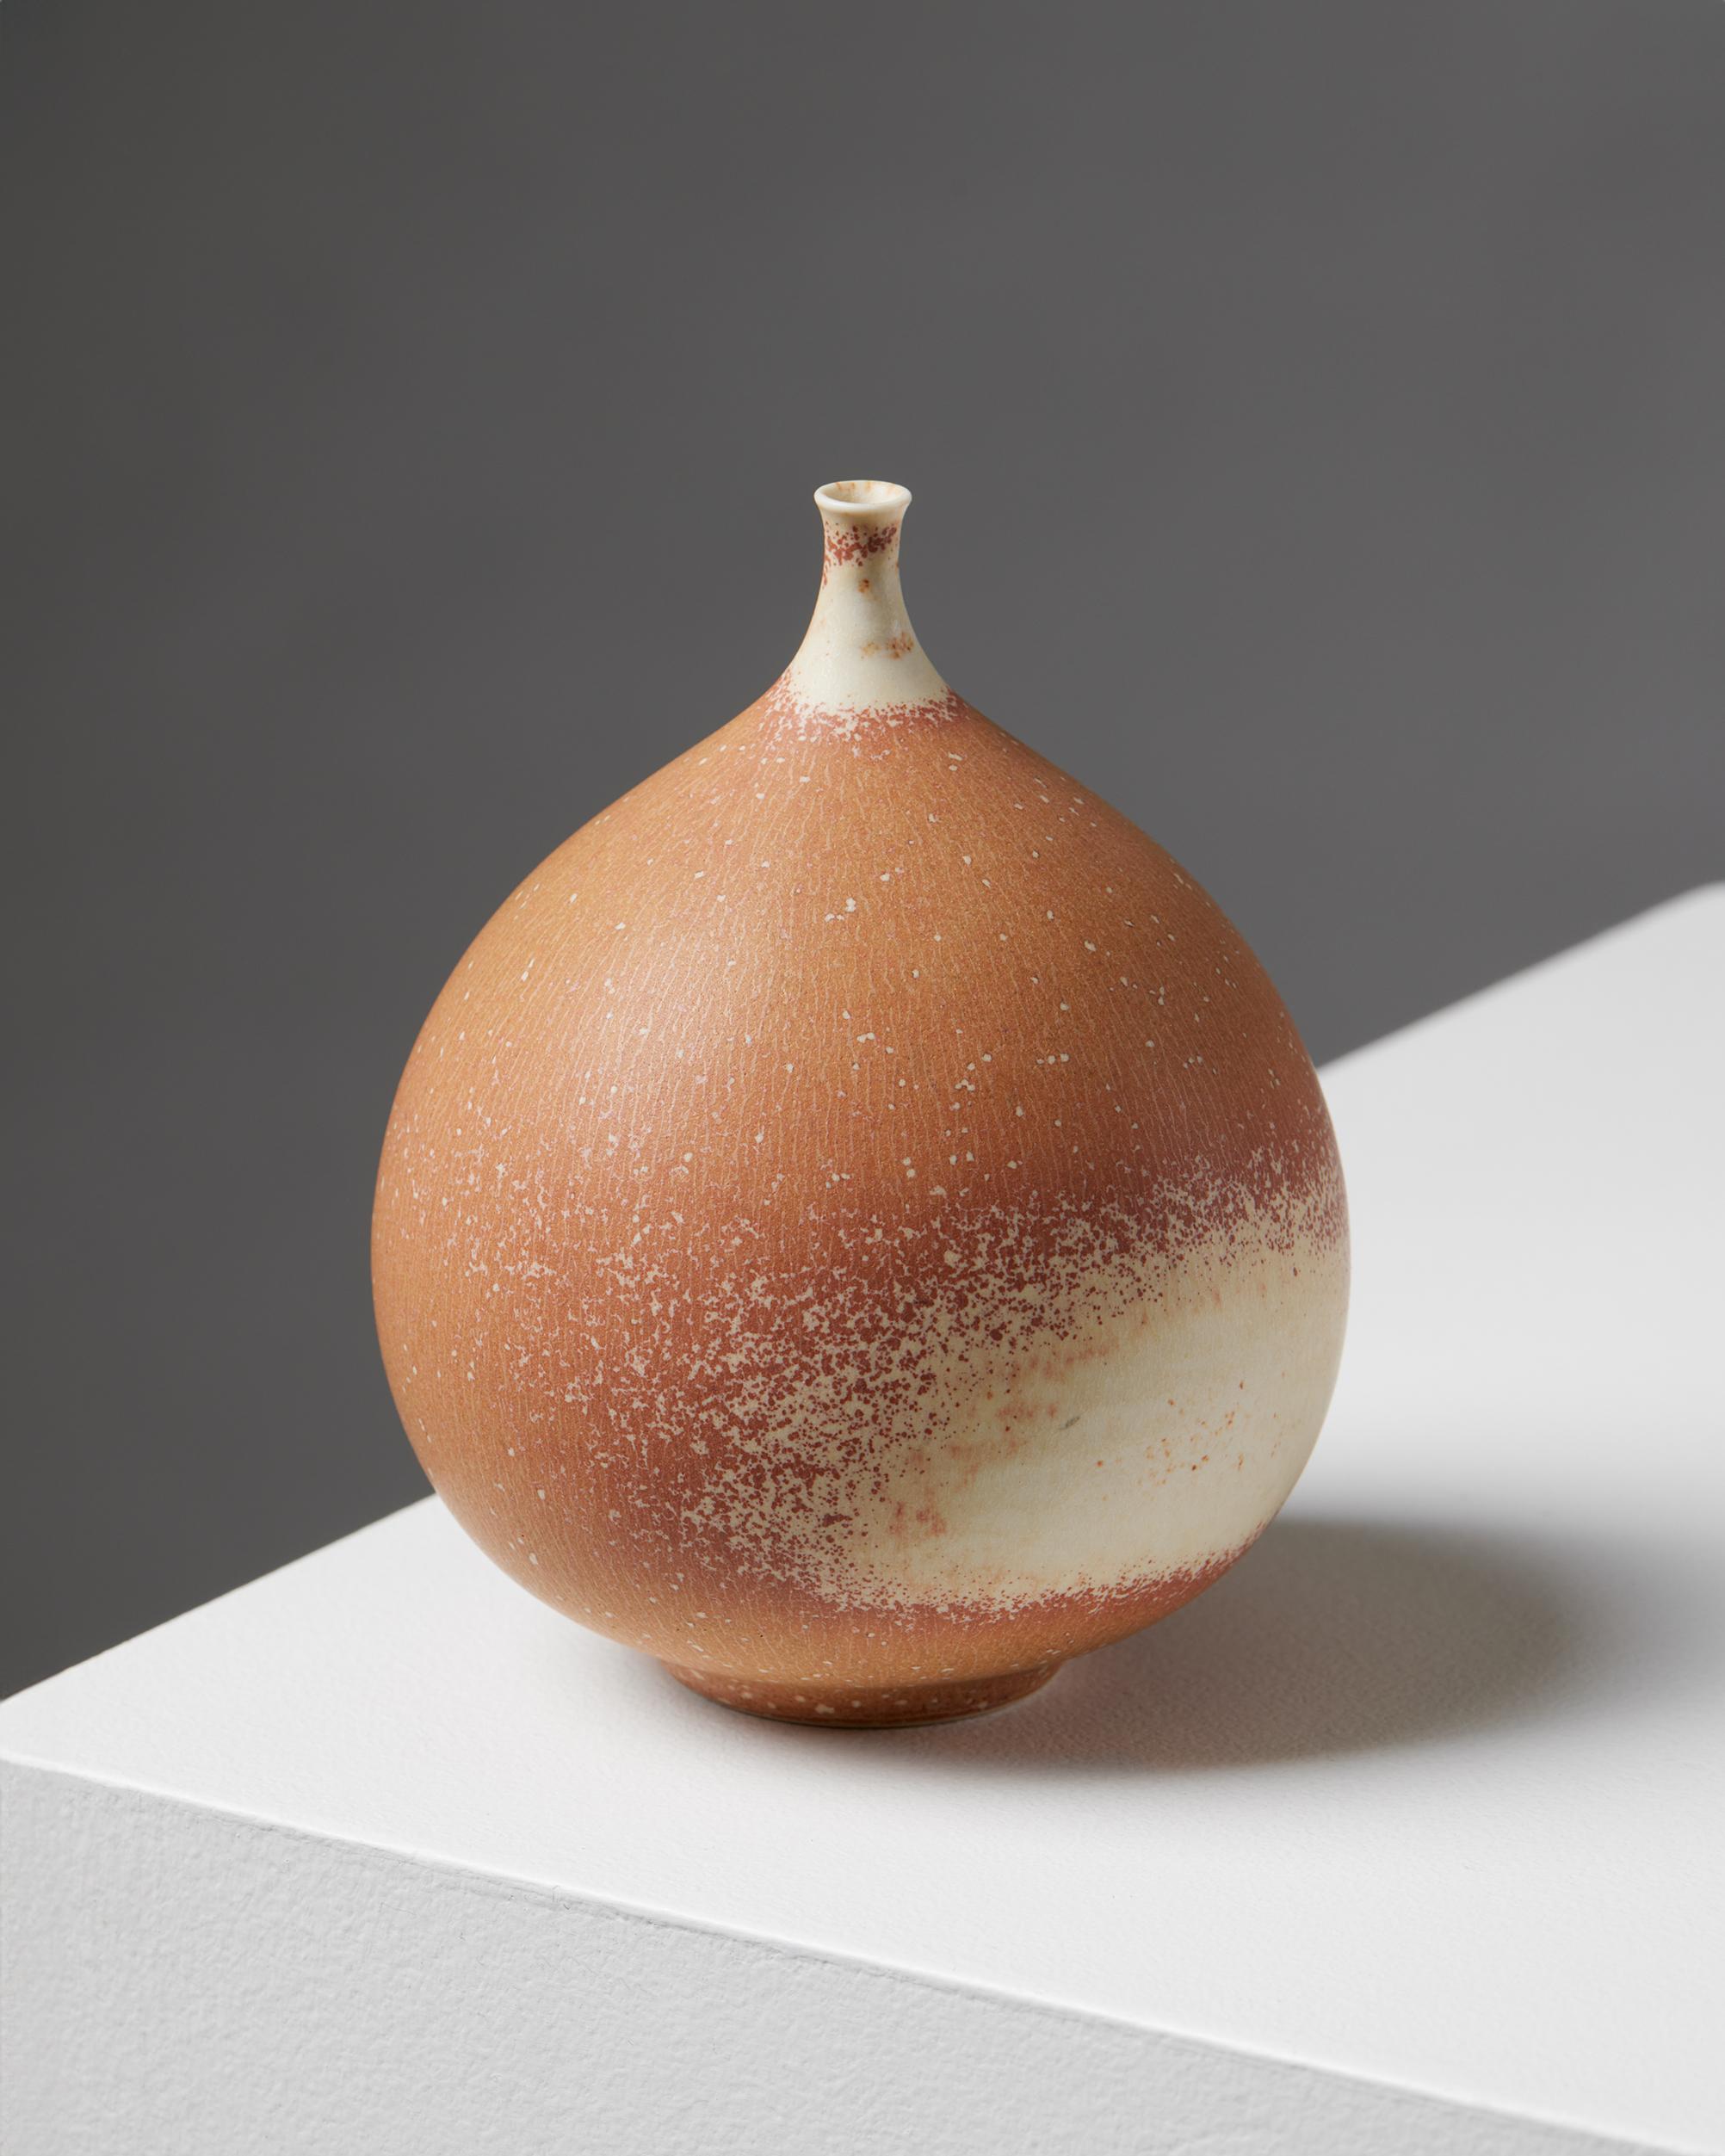 Vase von Vivi Calissendorff, Schweden, 1970er Jahre
Gestempelt.

H: 13 cm
Durchmesser: 9 cm